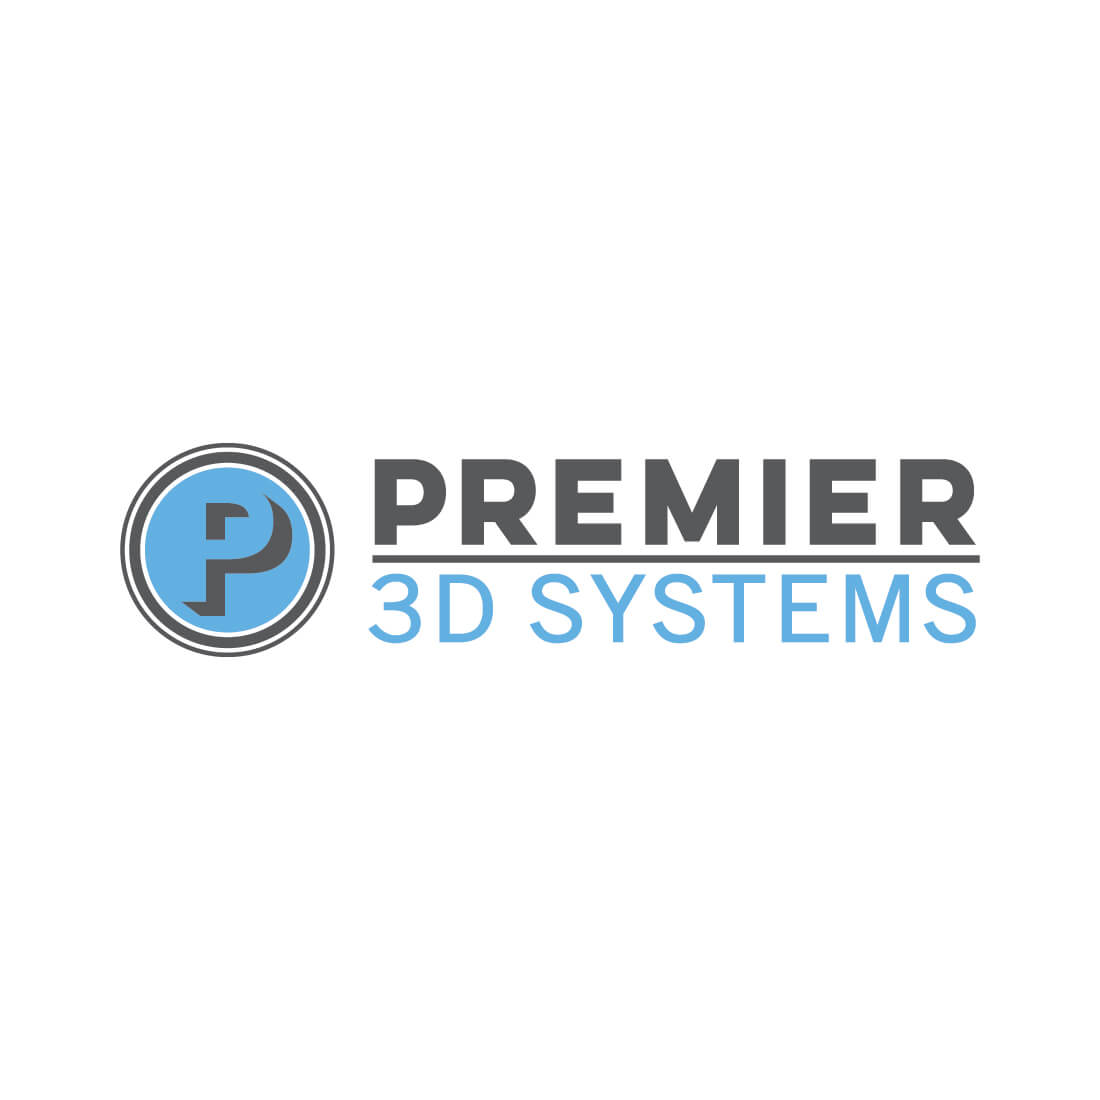 Premier 3D Systems